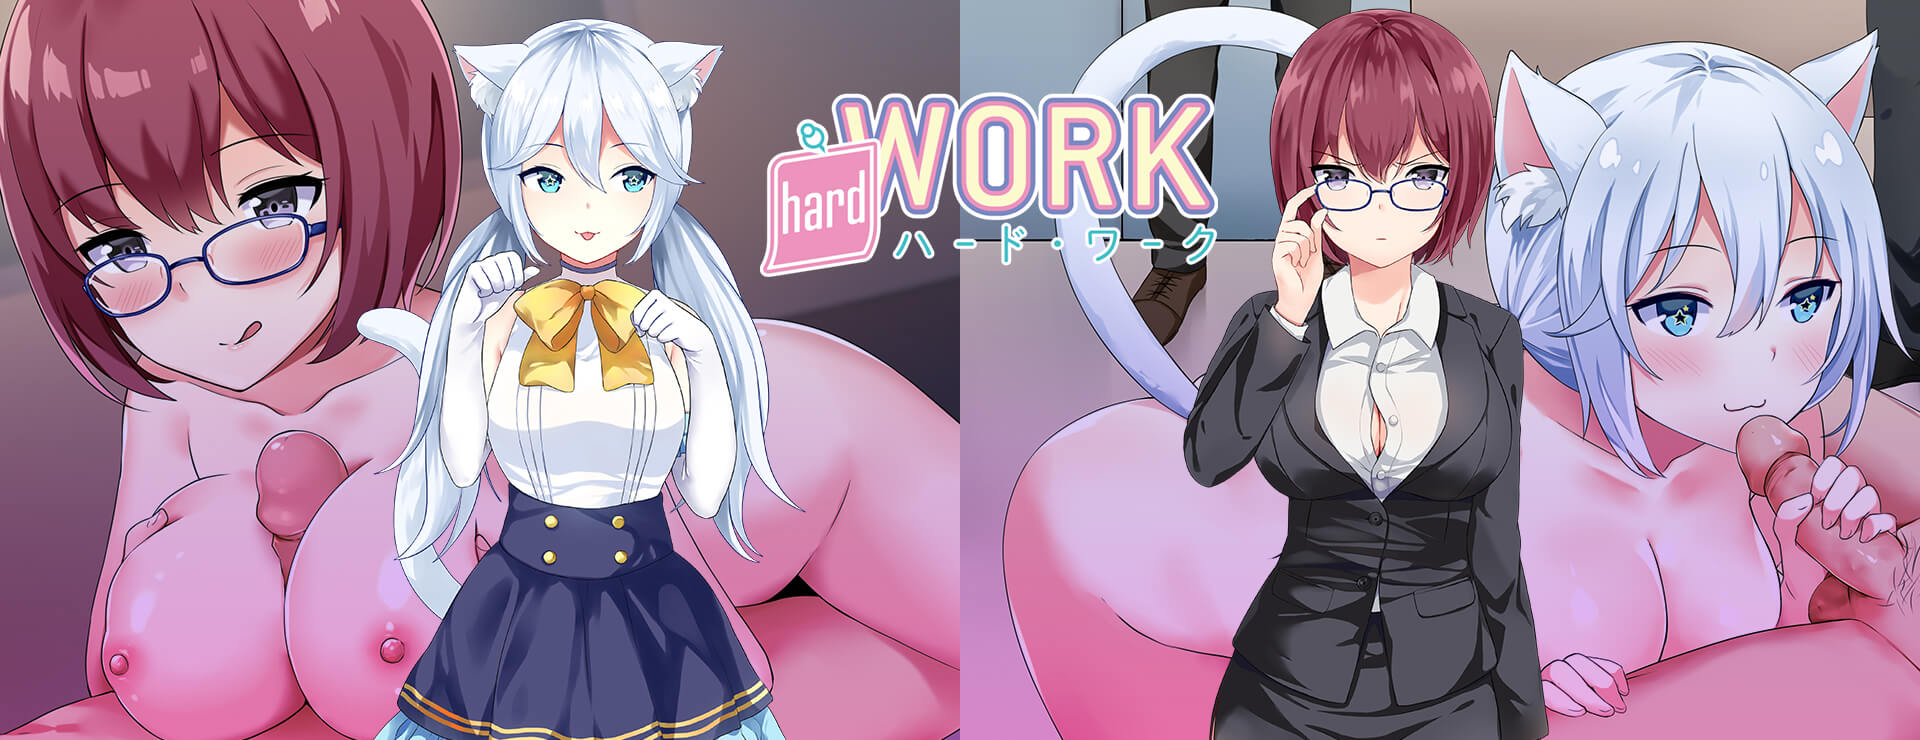 Hard Work - Visual Novel Game